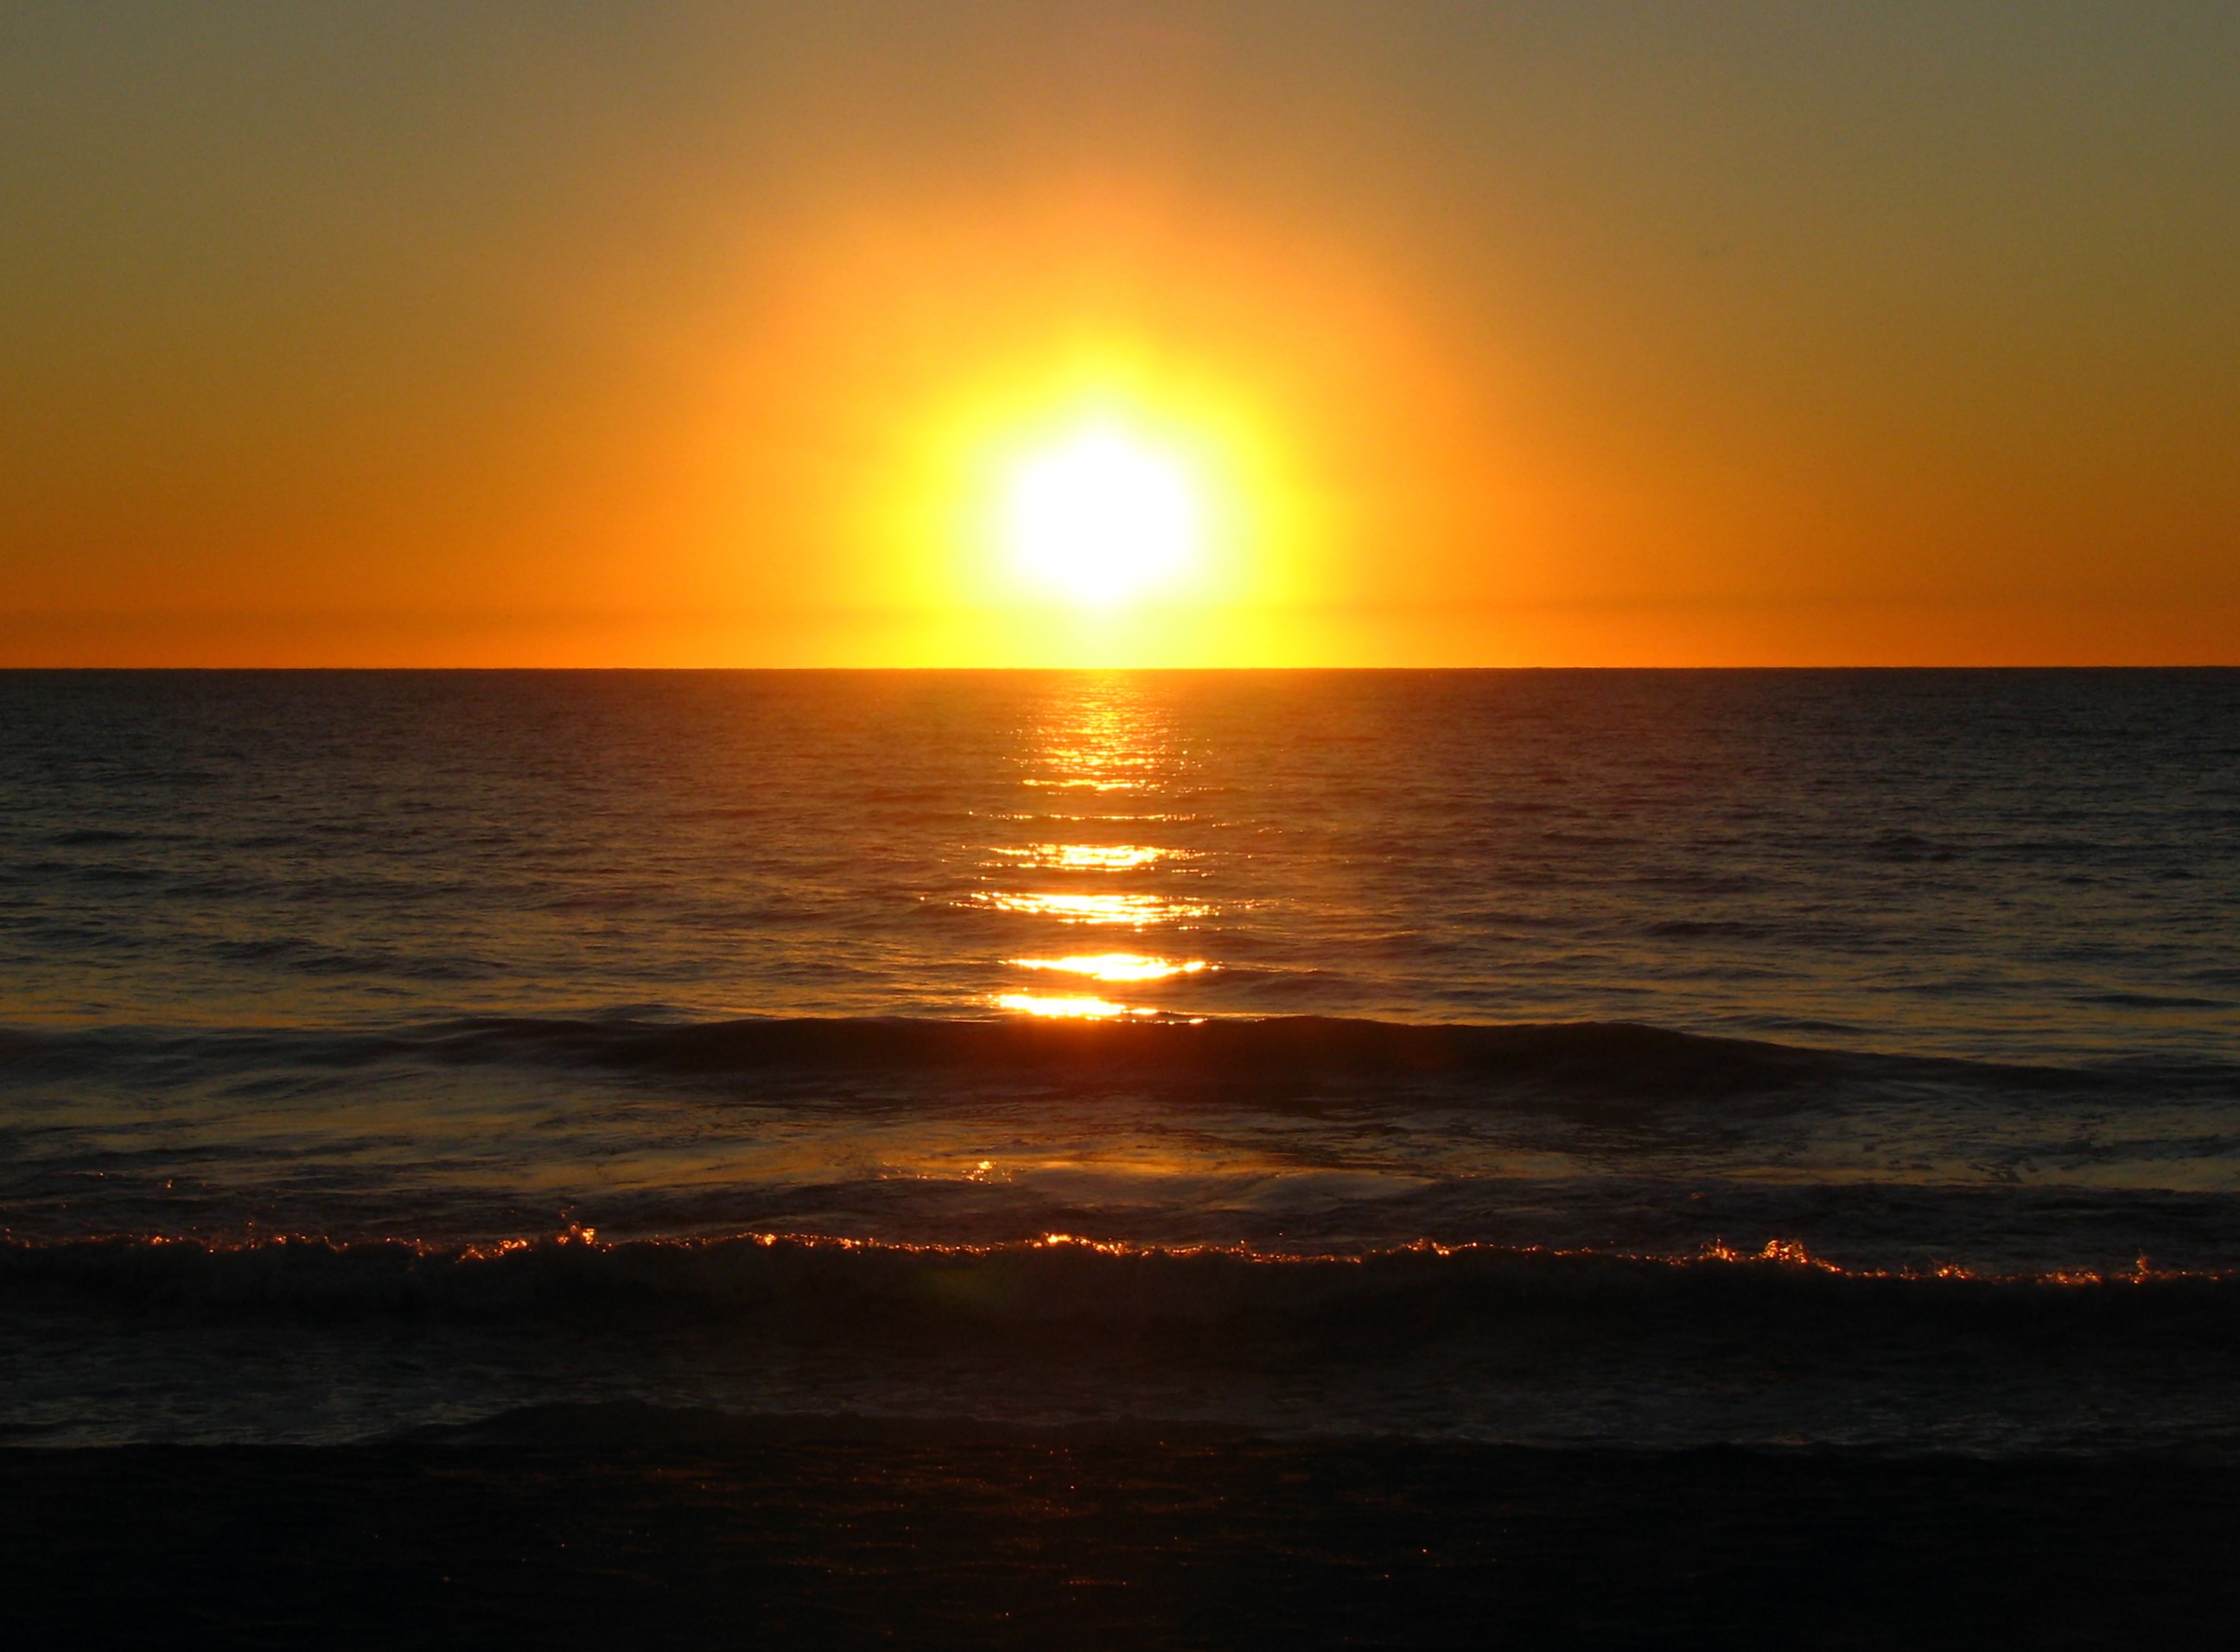 An ocean sunset landscape photo